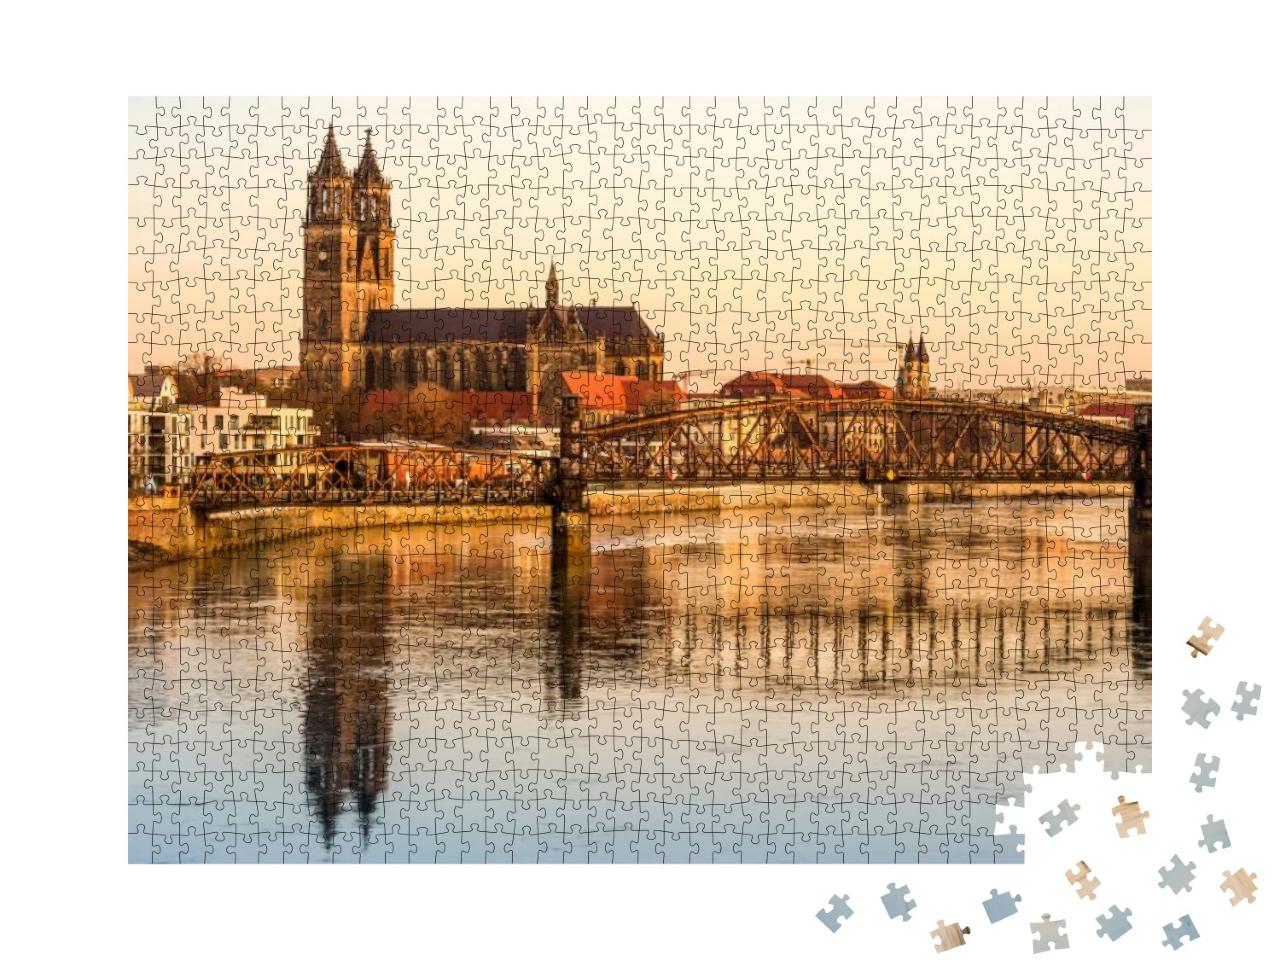 Puzzle 1000 Teile „Magdeburg, Landeshauptstadt von Sachsen-Anhalt, Deutschland“